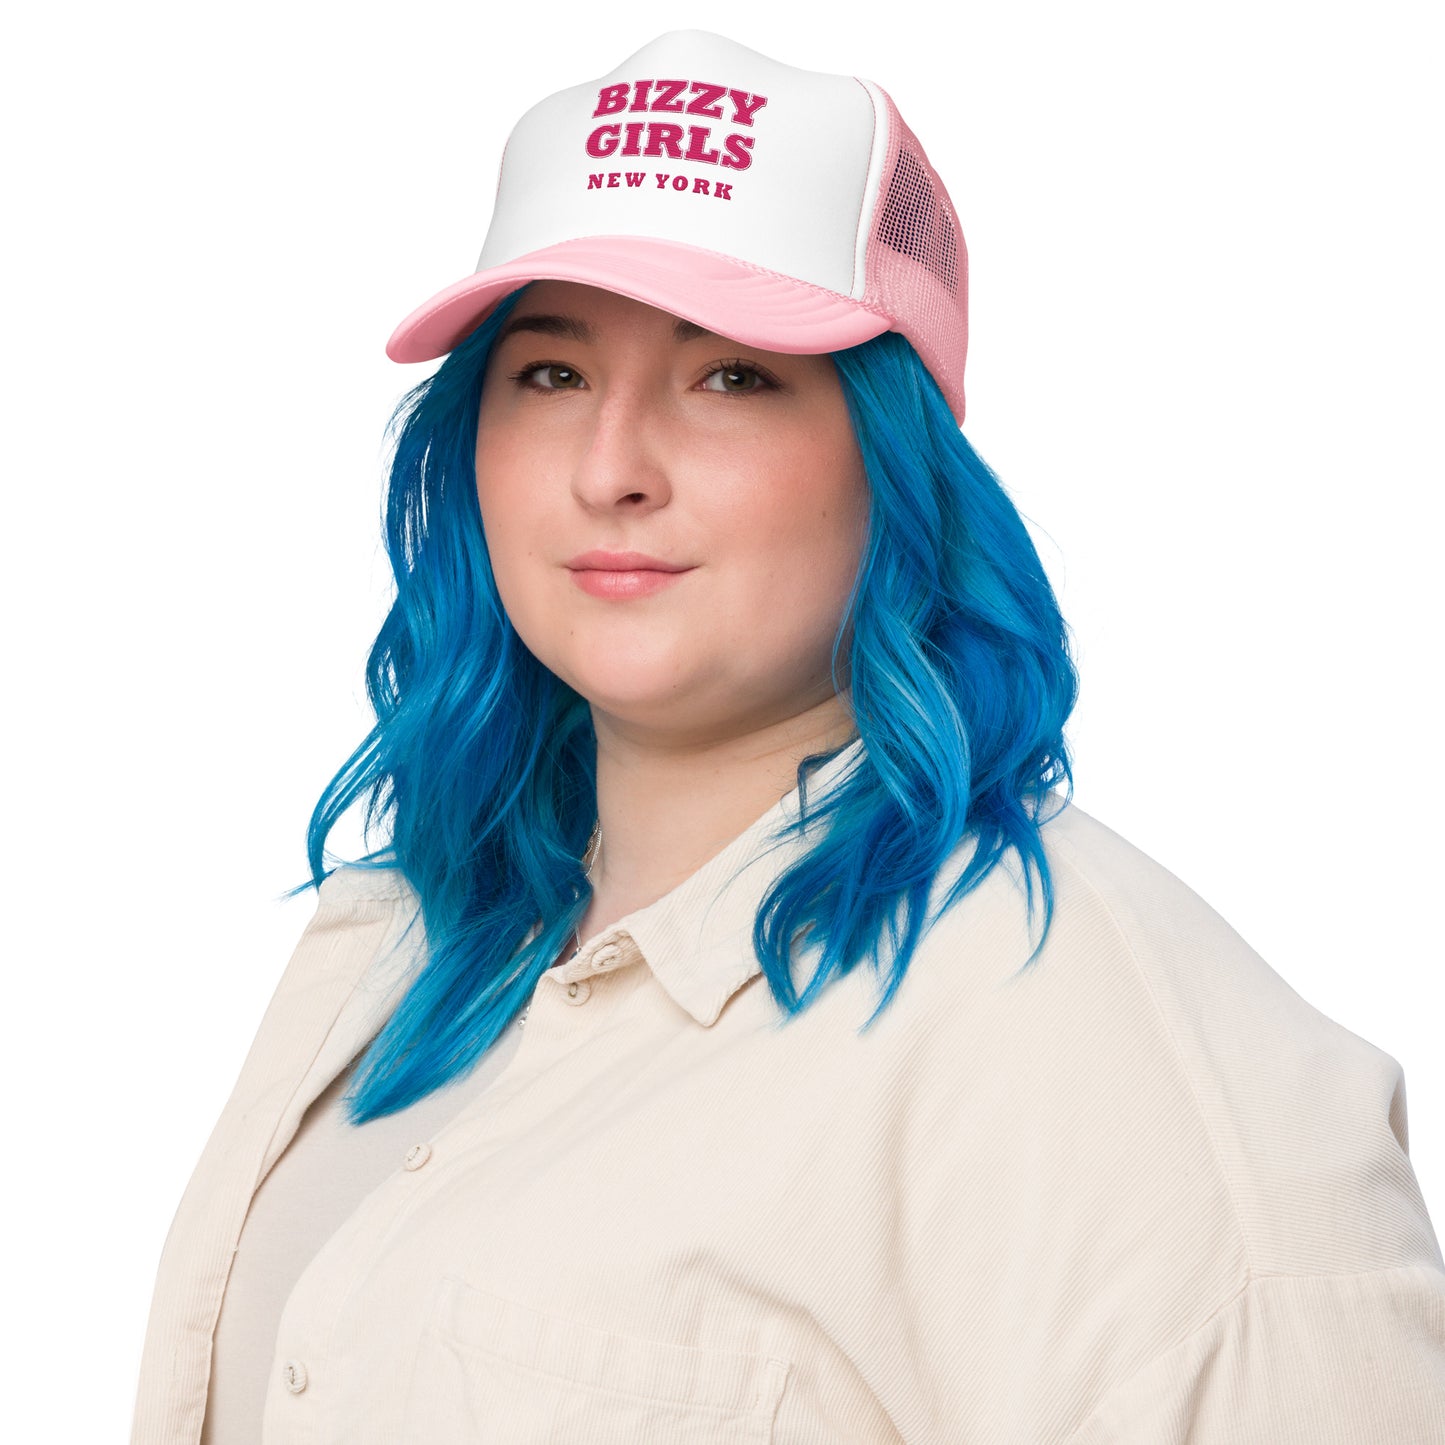 Bizzy Girls Foam trucker hat - New York